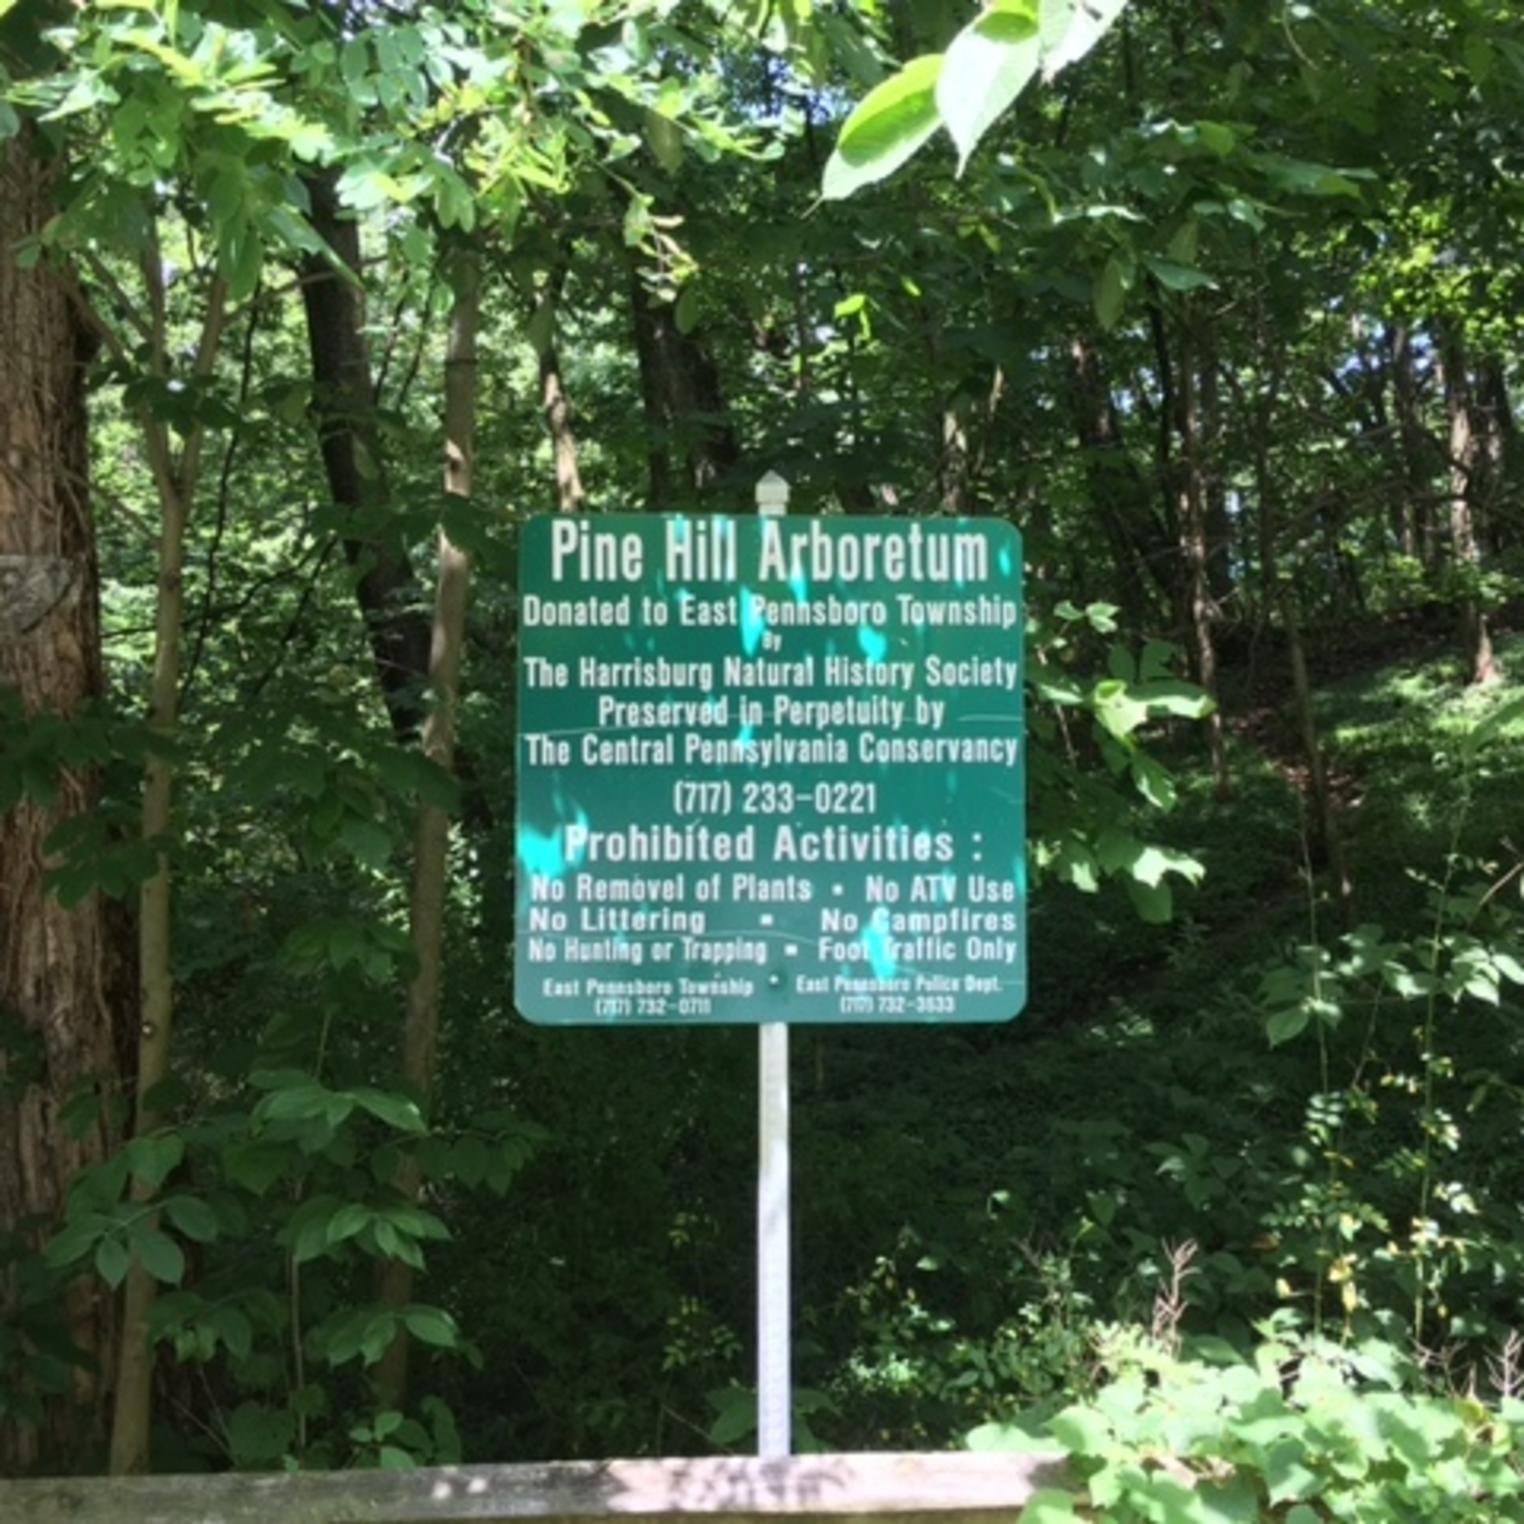 Pine Hill Arboretum